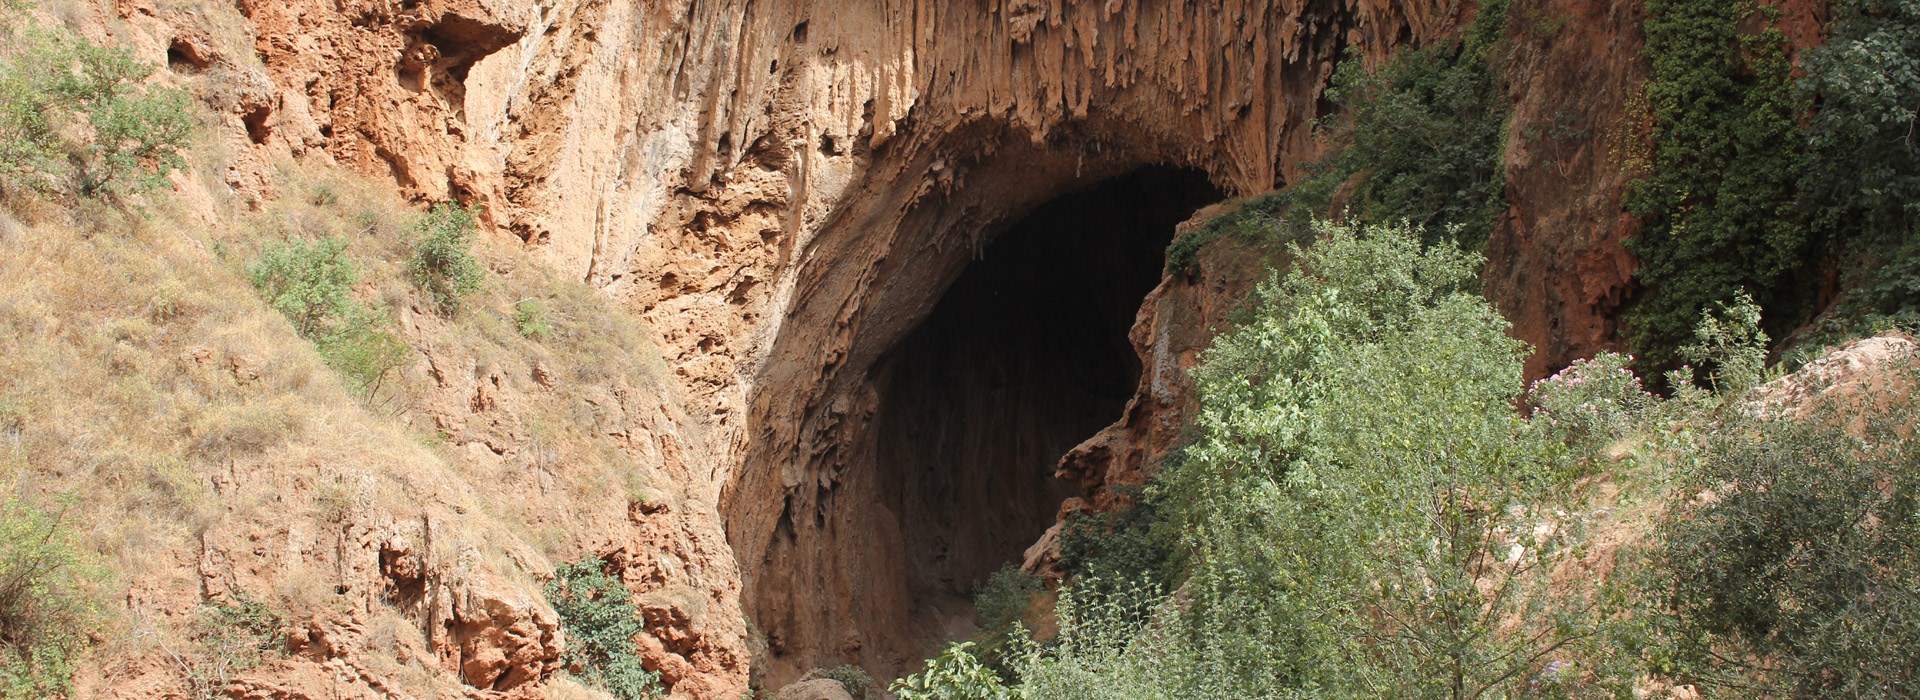 Visiter Le pont naturel d'Imi N Ifri - Maroc